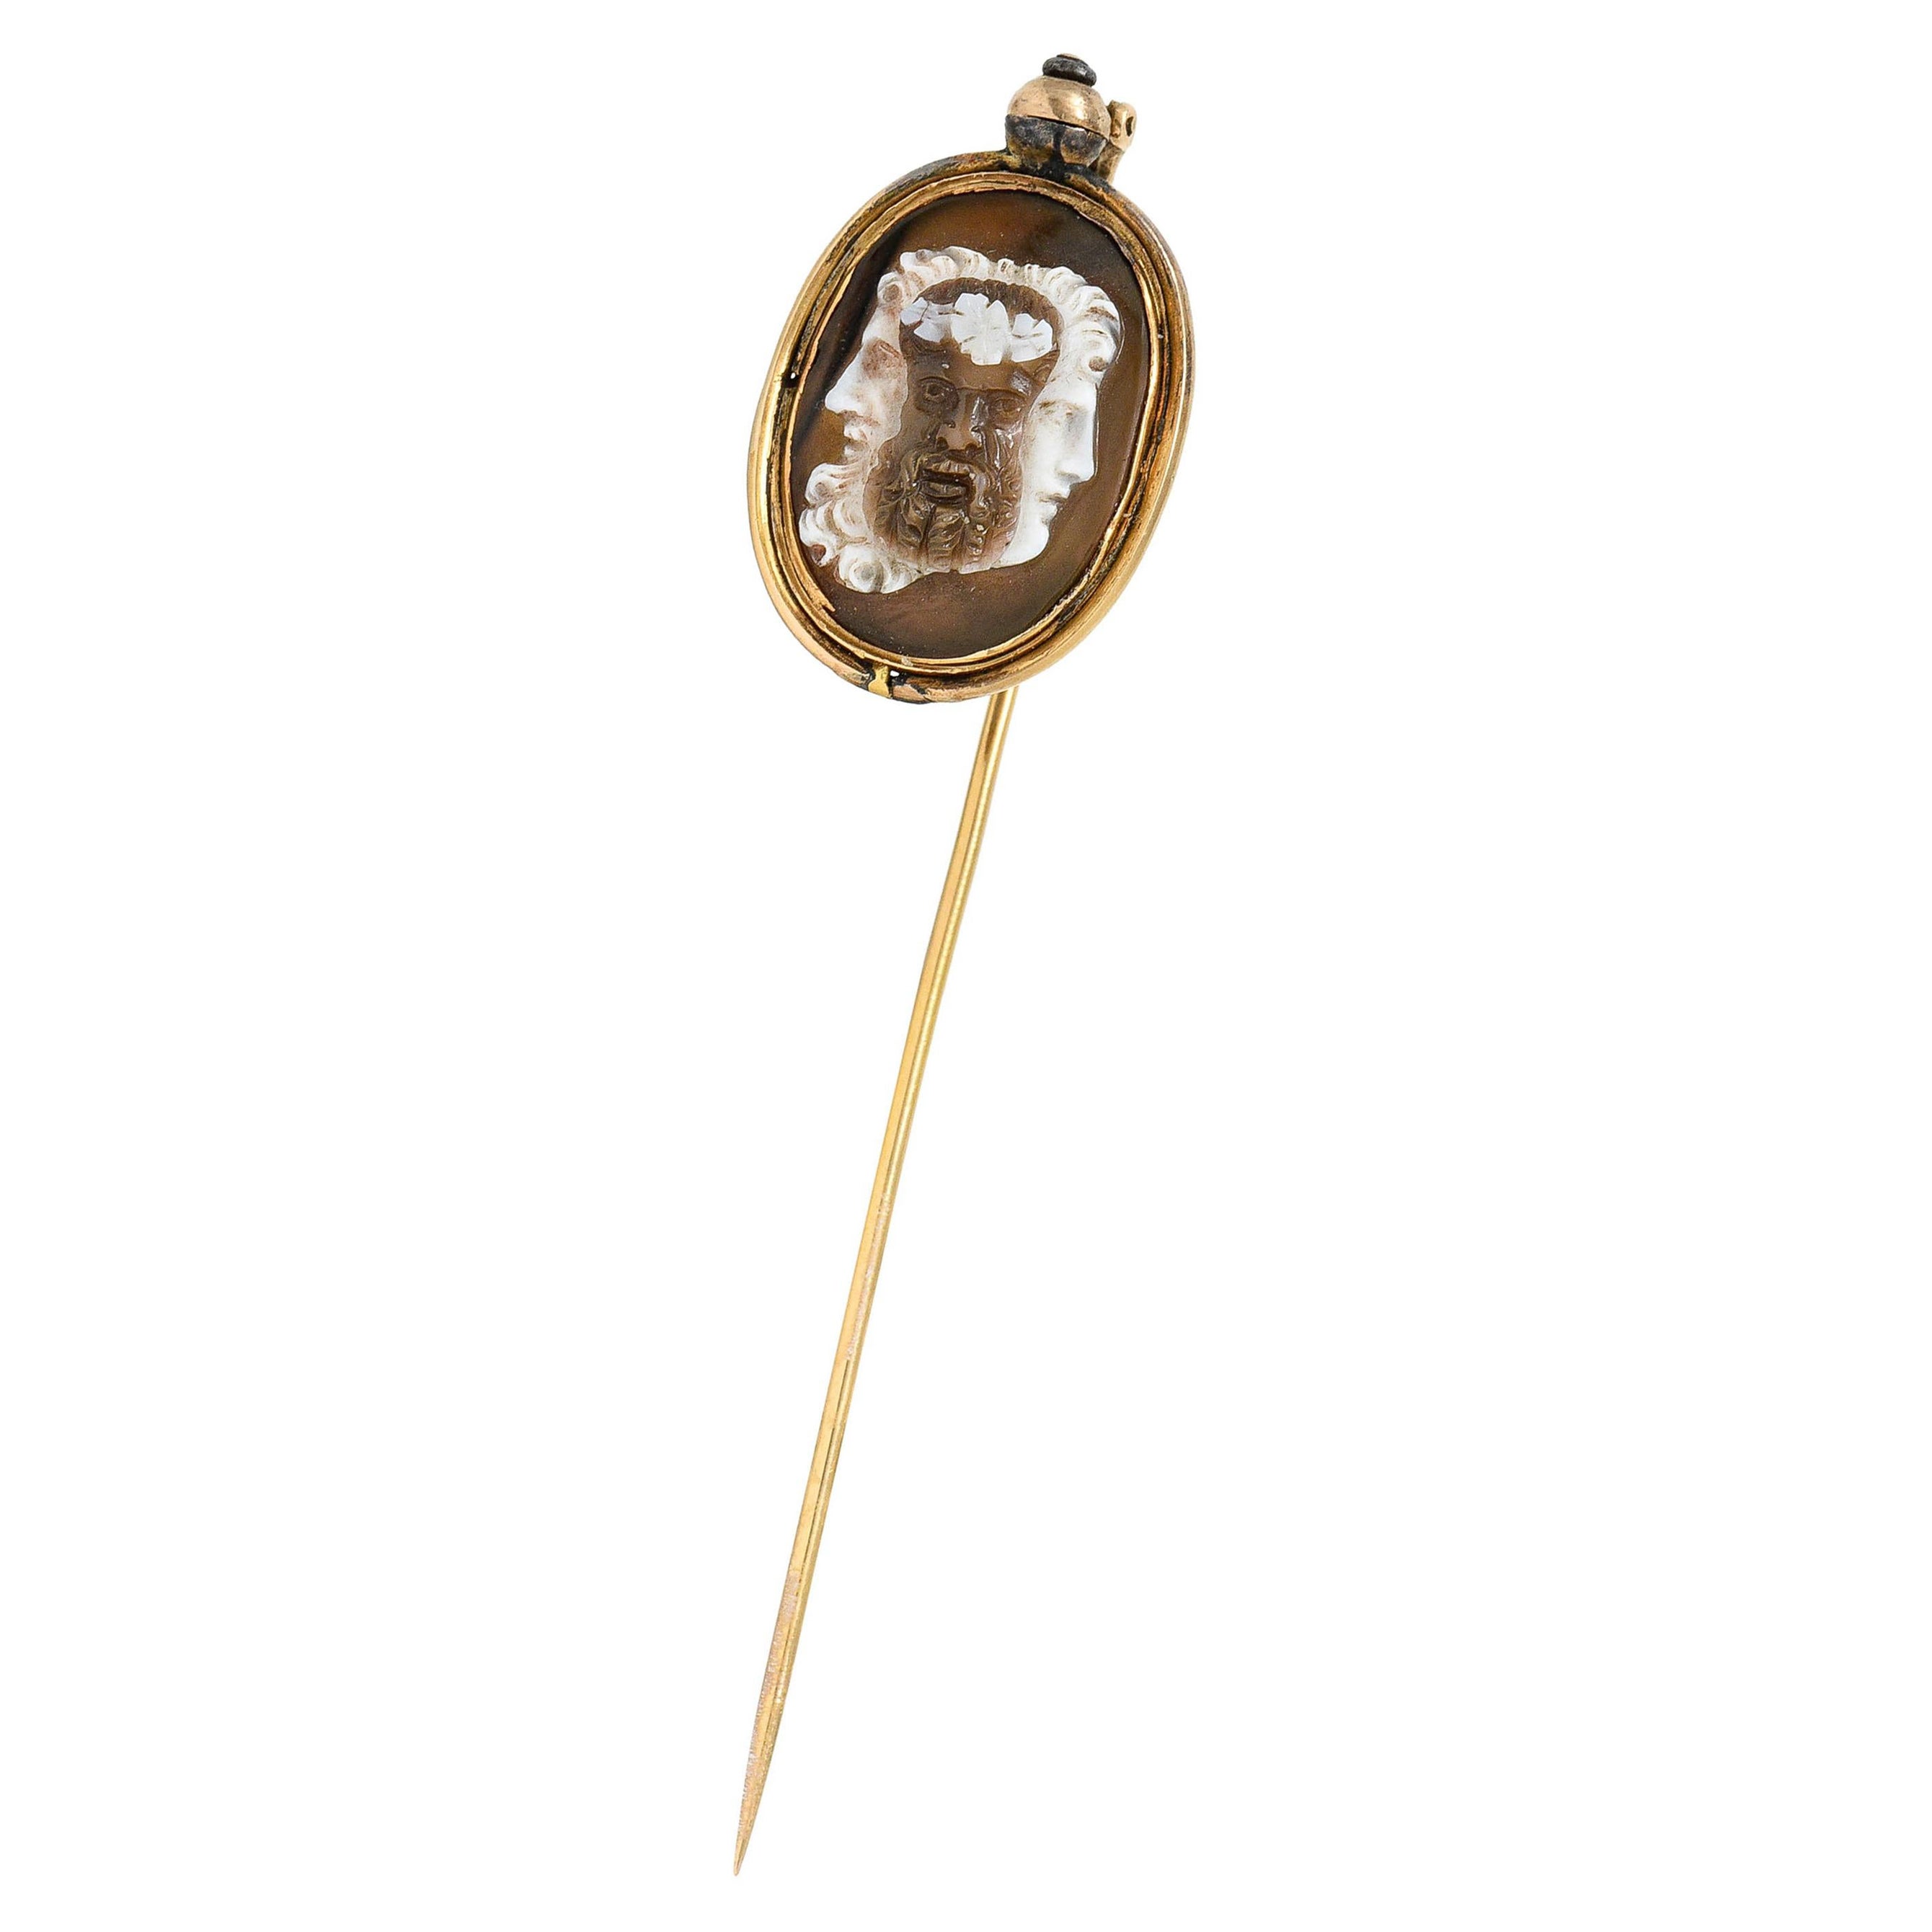 Superbe épingle à cravate victorienne en or 18 carats avec camée en agate représentant Persée Méduse